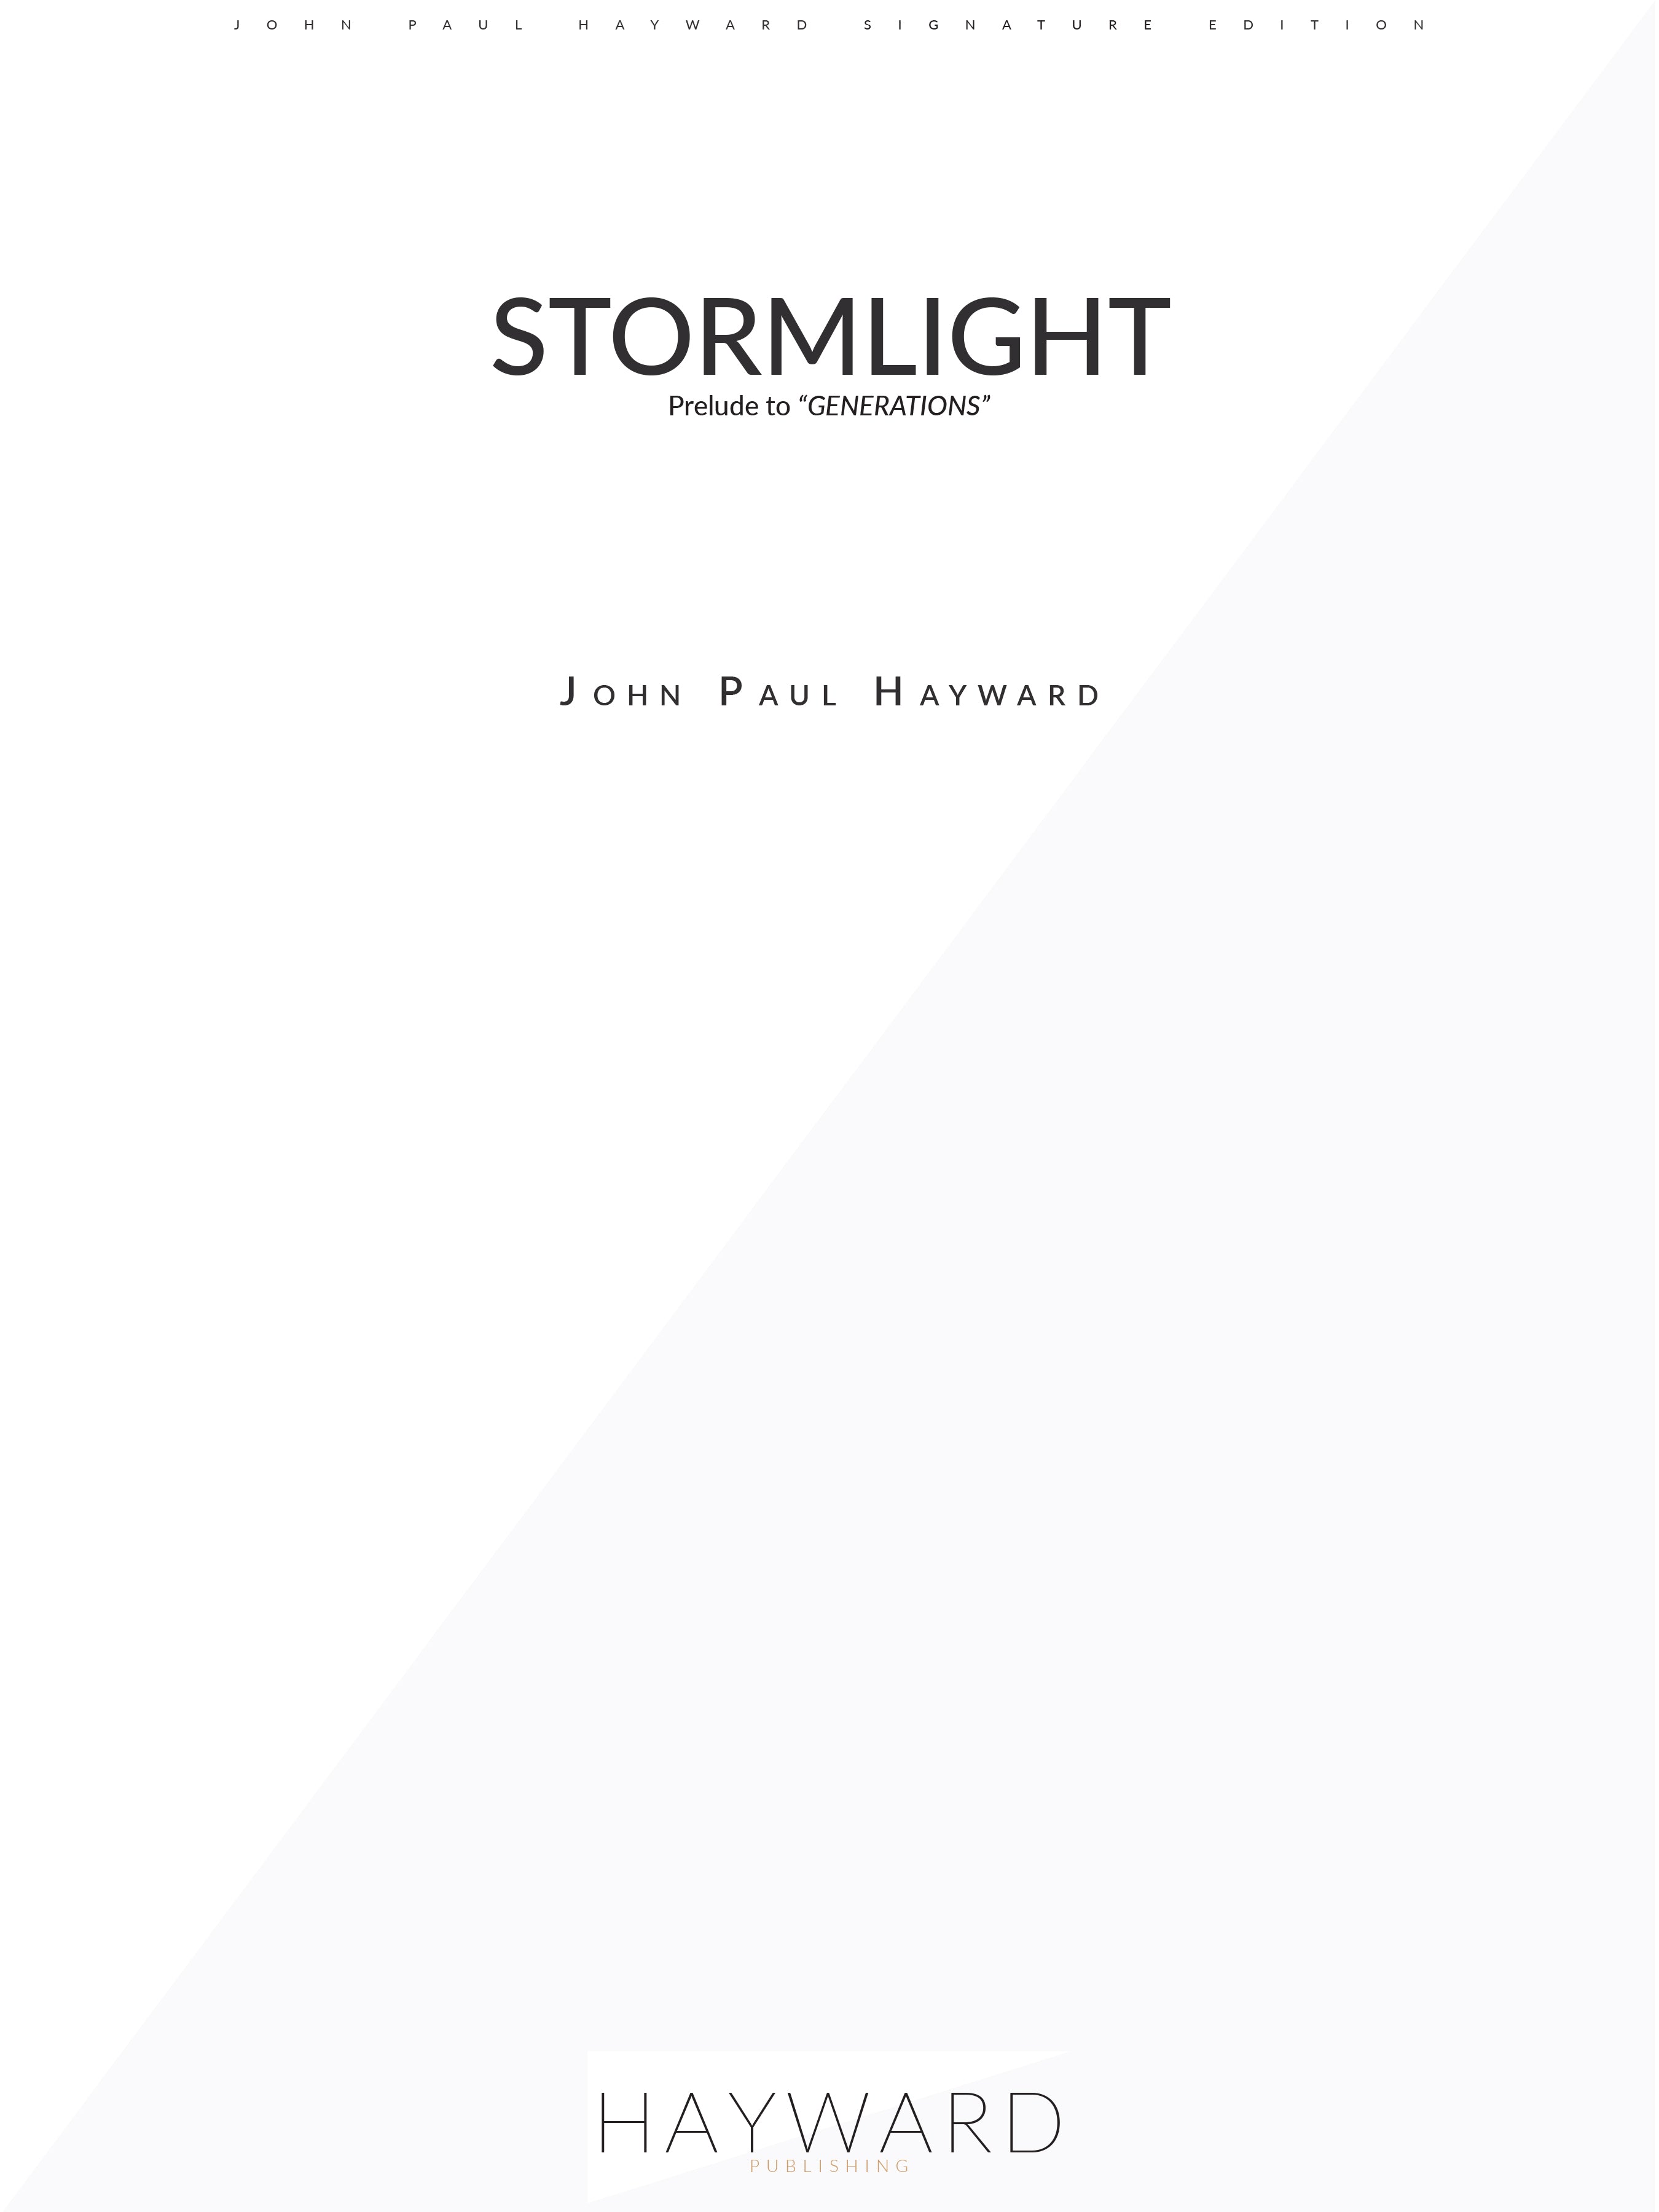 Stormlight